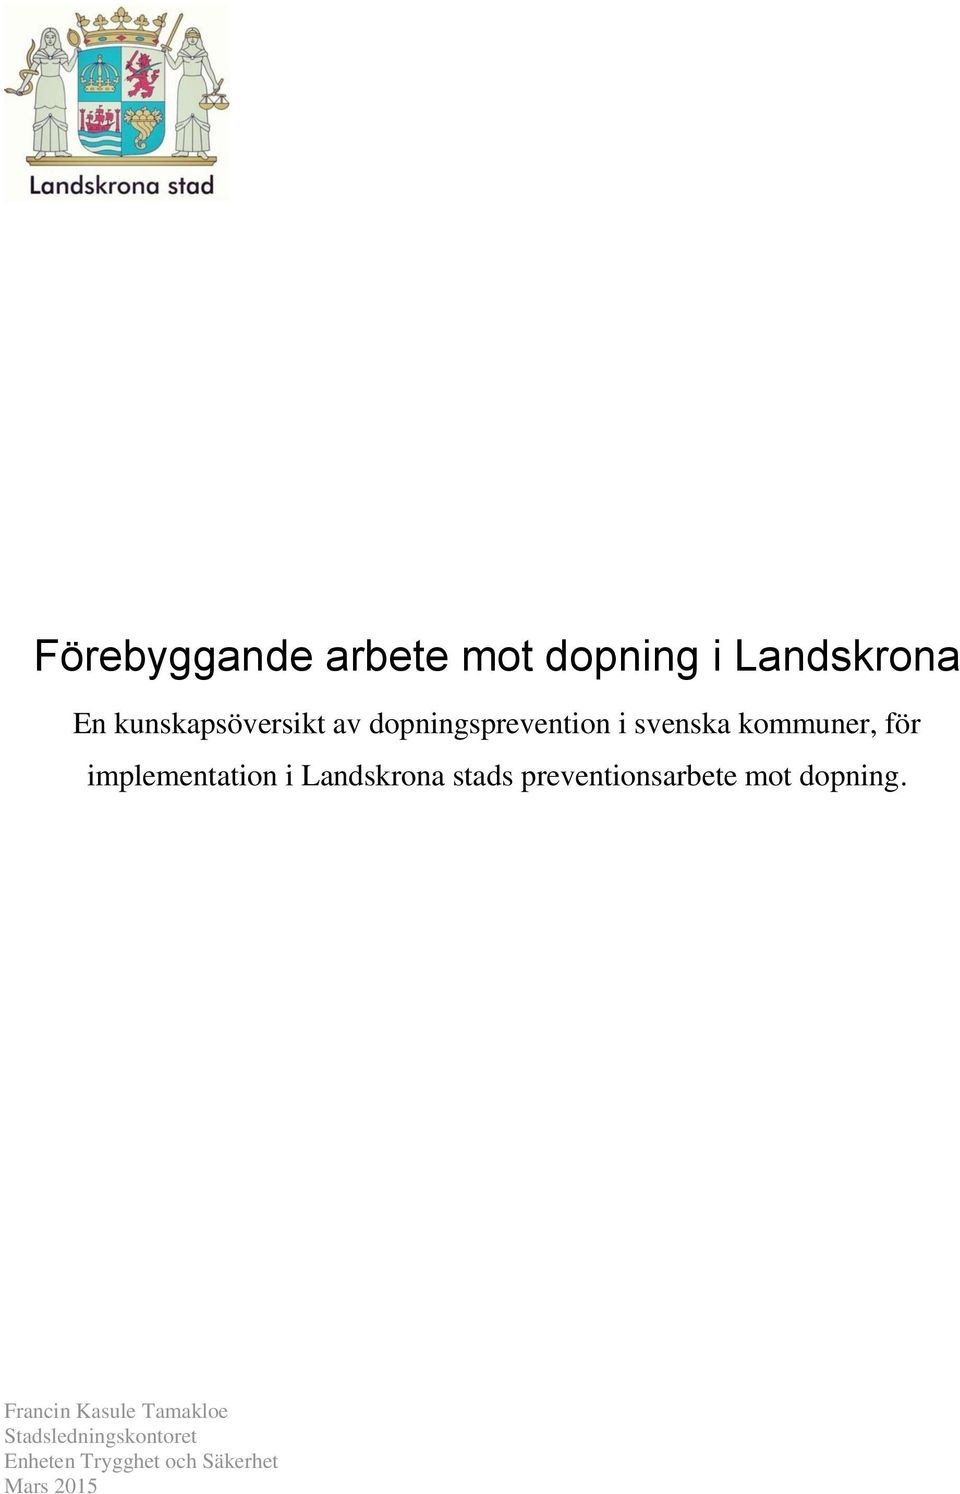 Landskrona stads preventionsarbete mot dopning.